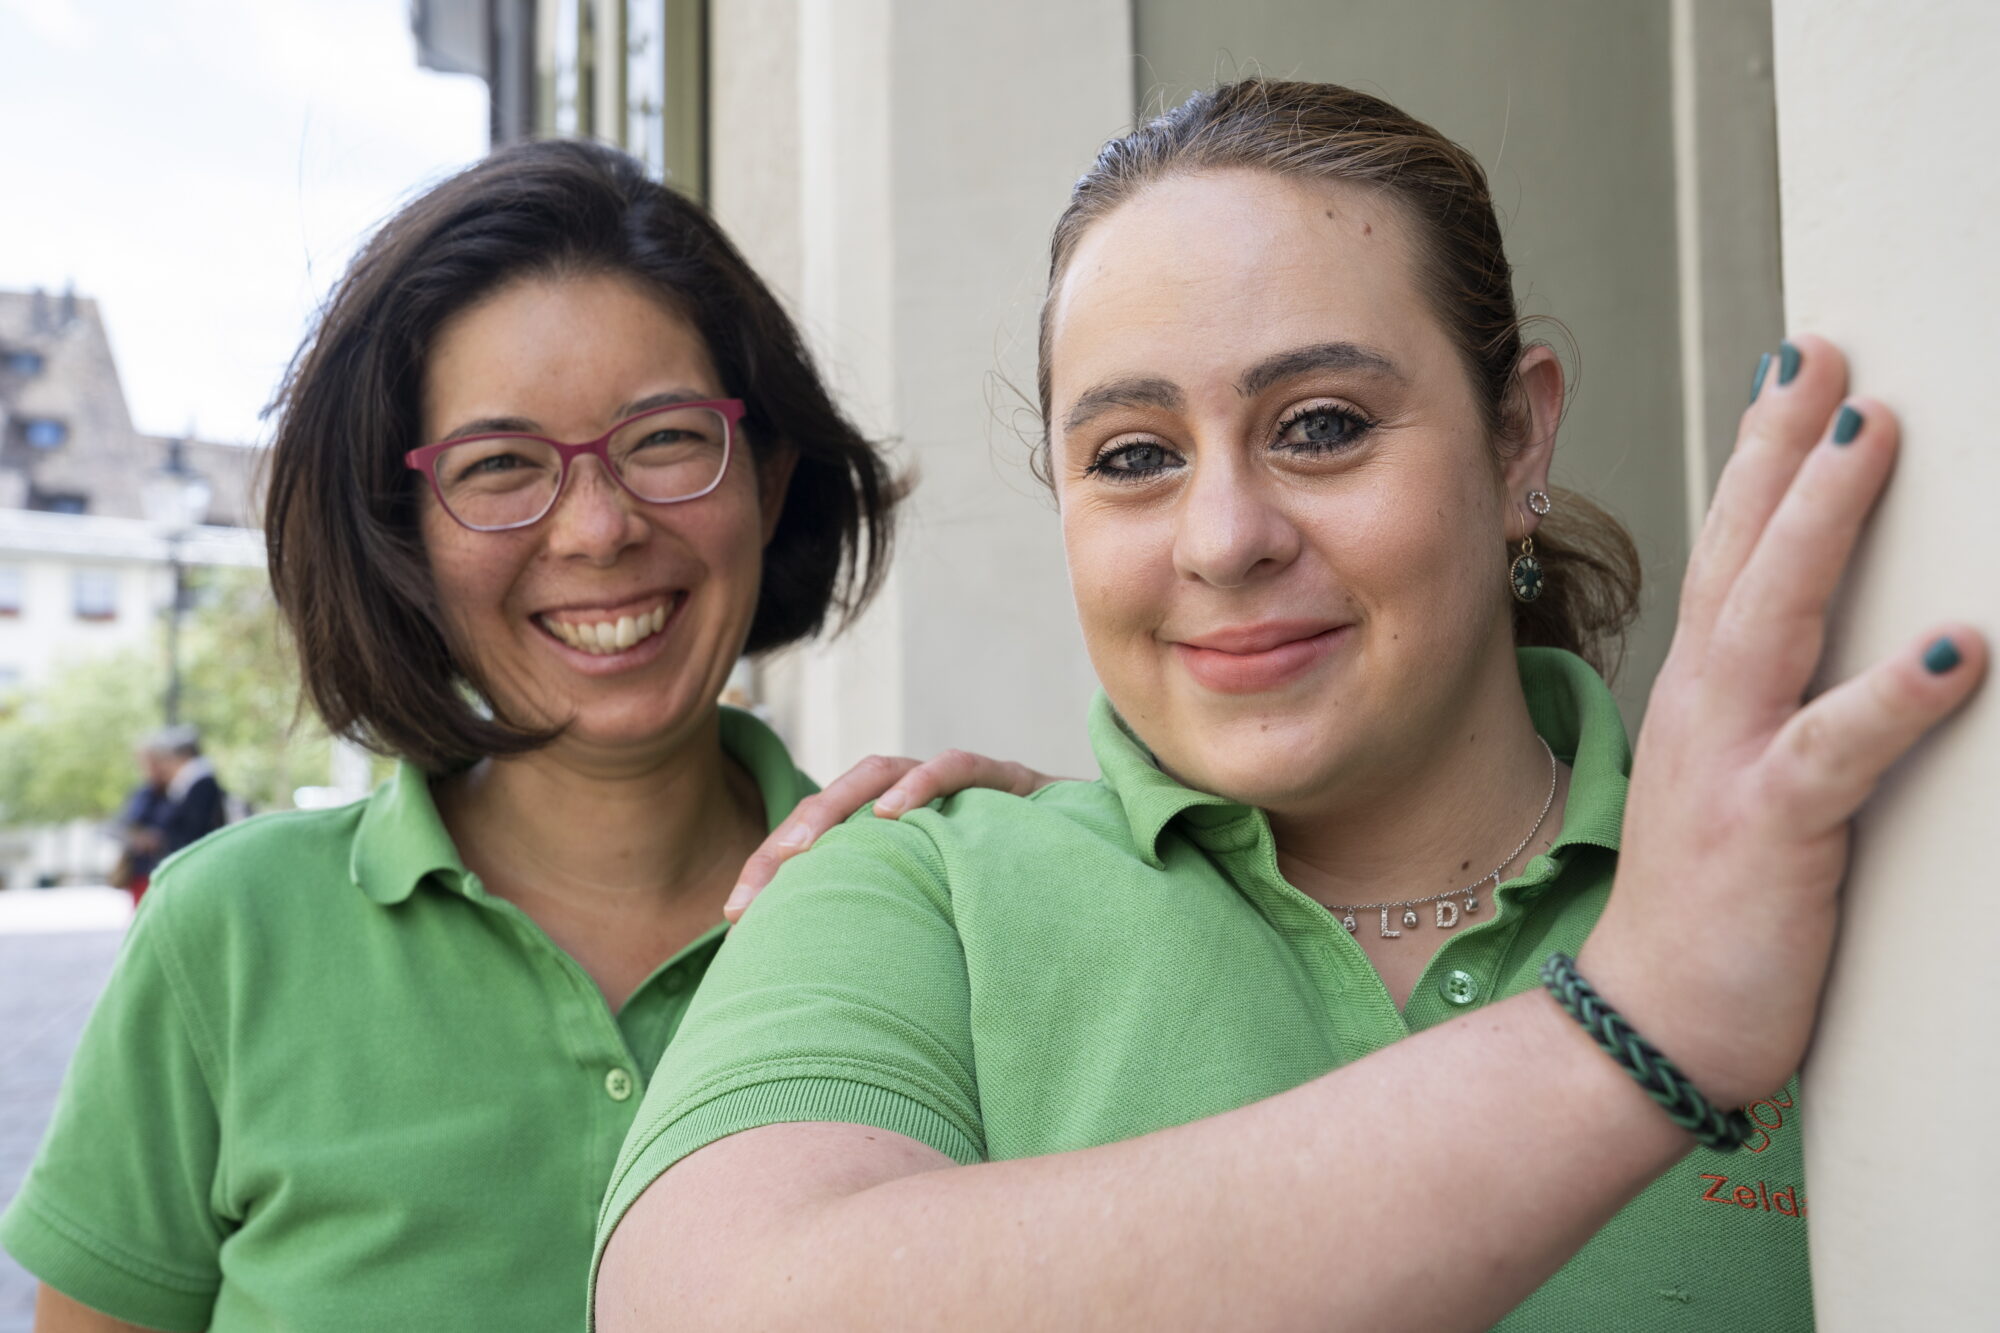 Zwei grün gekleidete Frauen lächeln und starren in die Kamera.